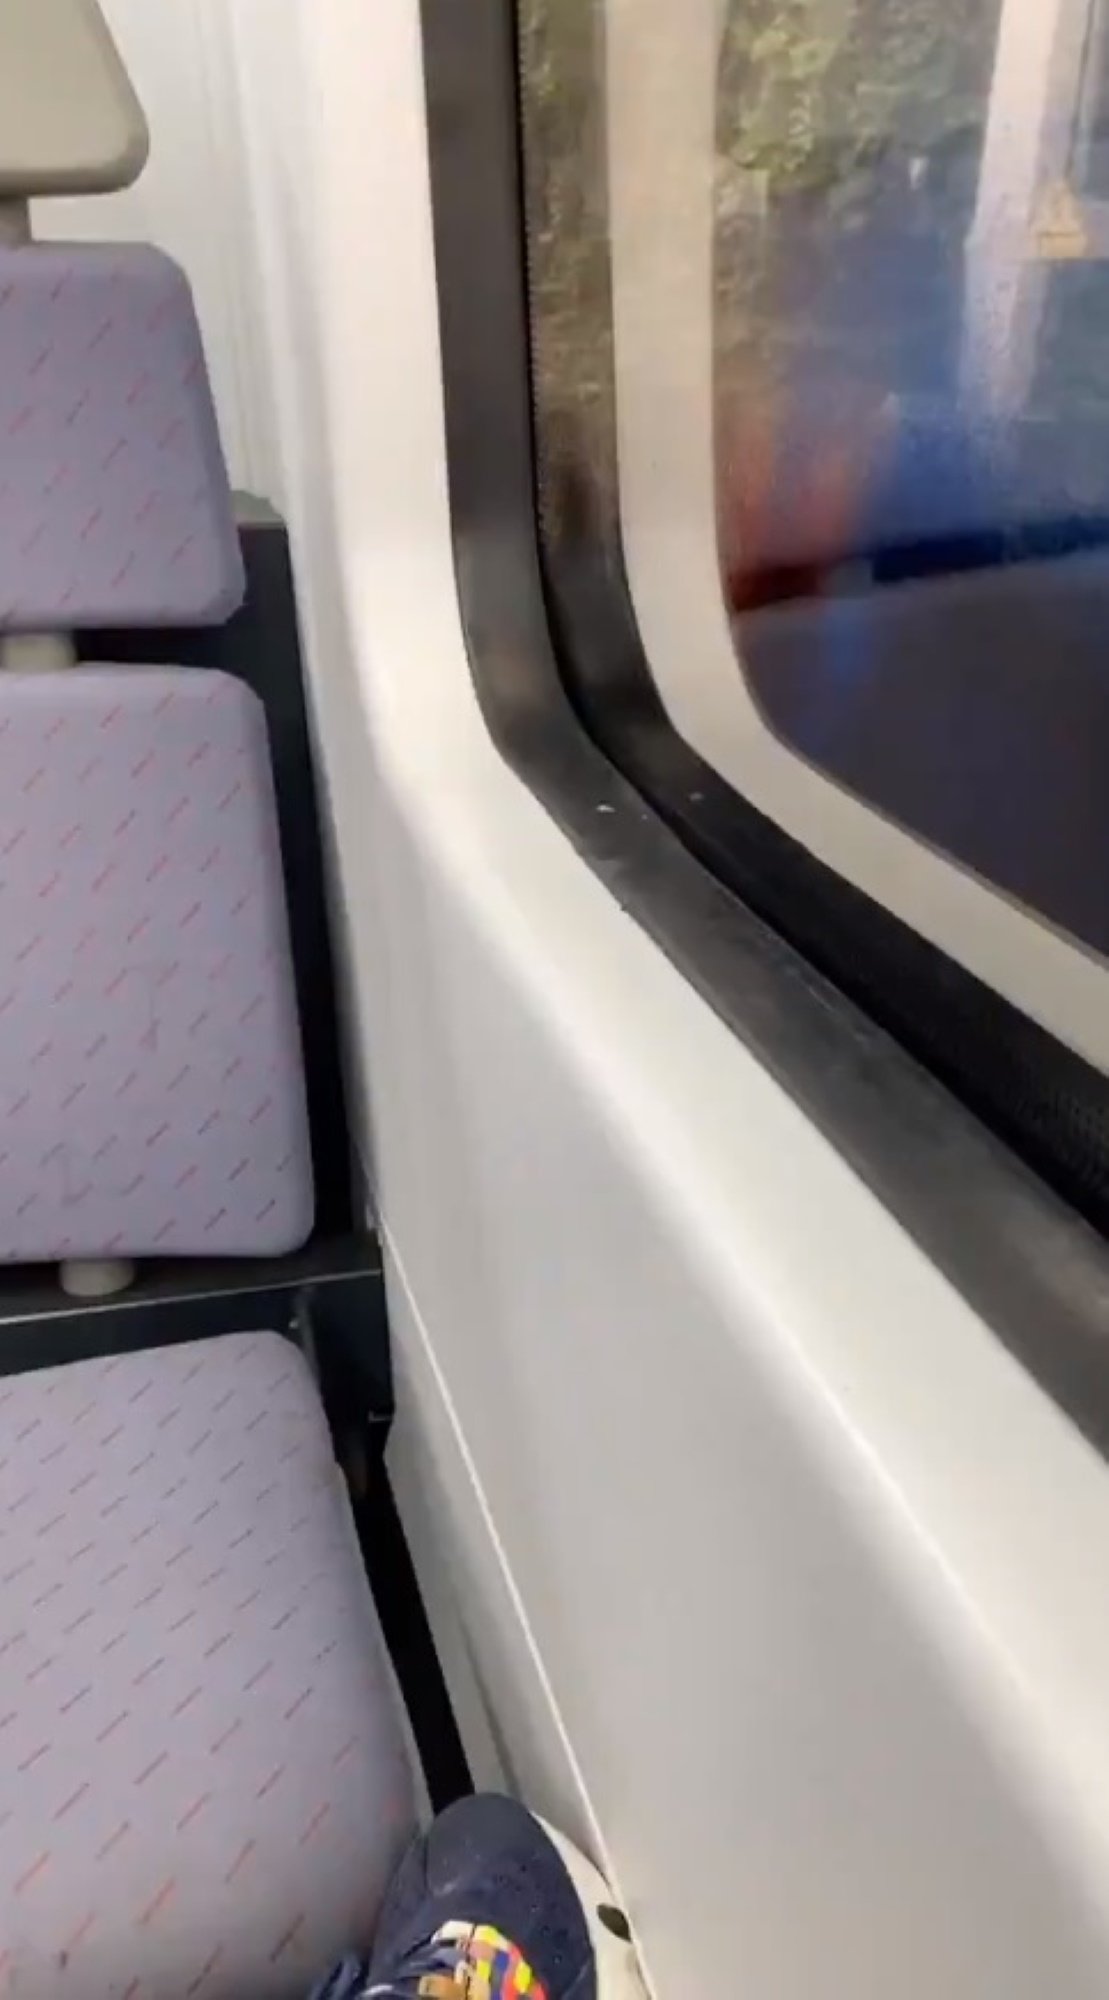 Un catalán televisivo, parado en un tren de Rodalies: "Cabrones"